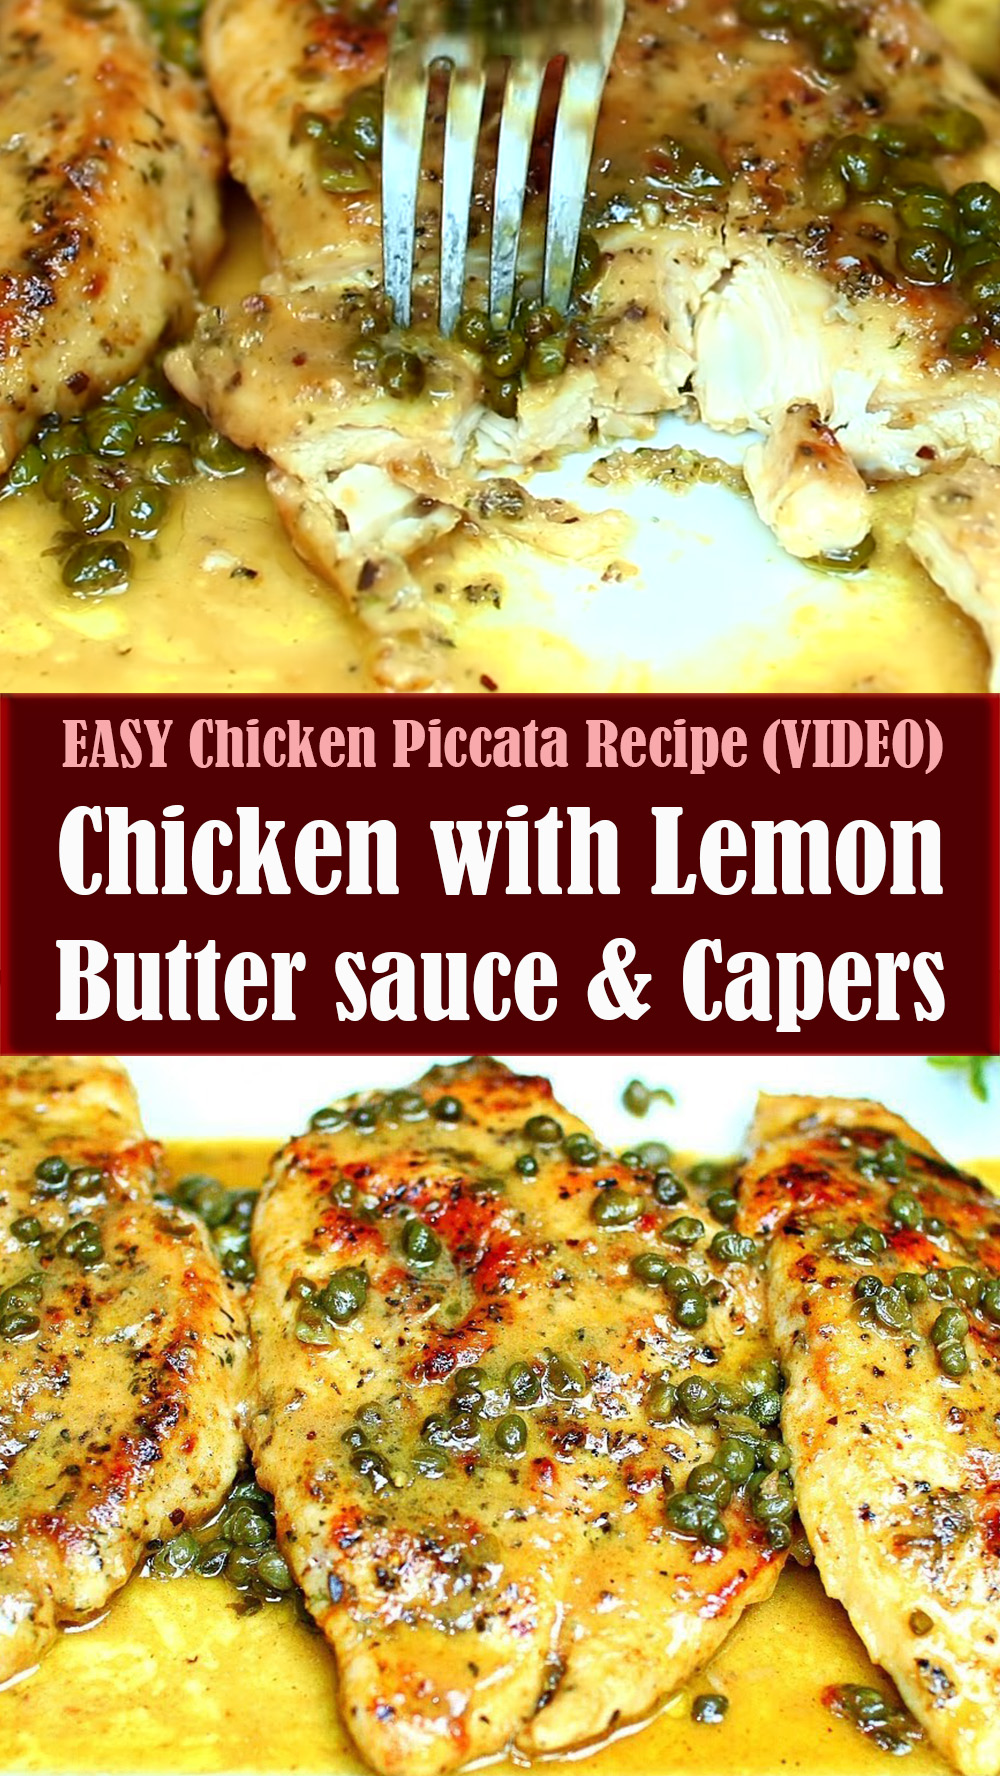 EASY Chicken Piccata Recipe